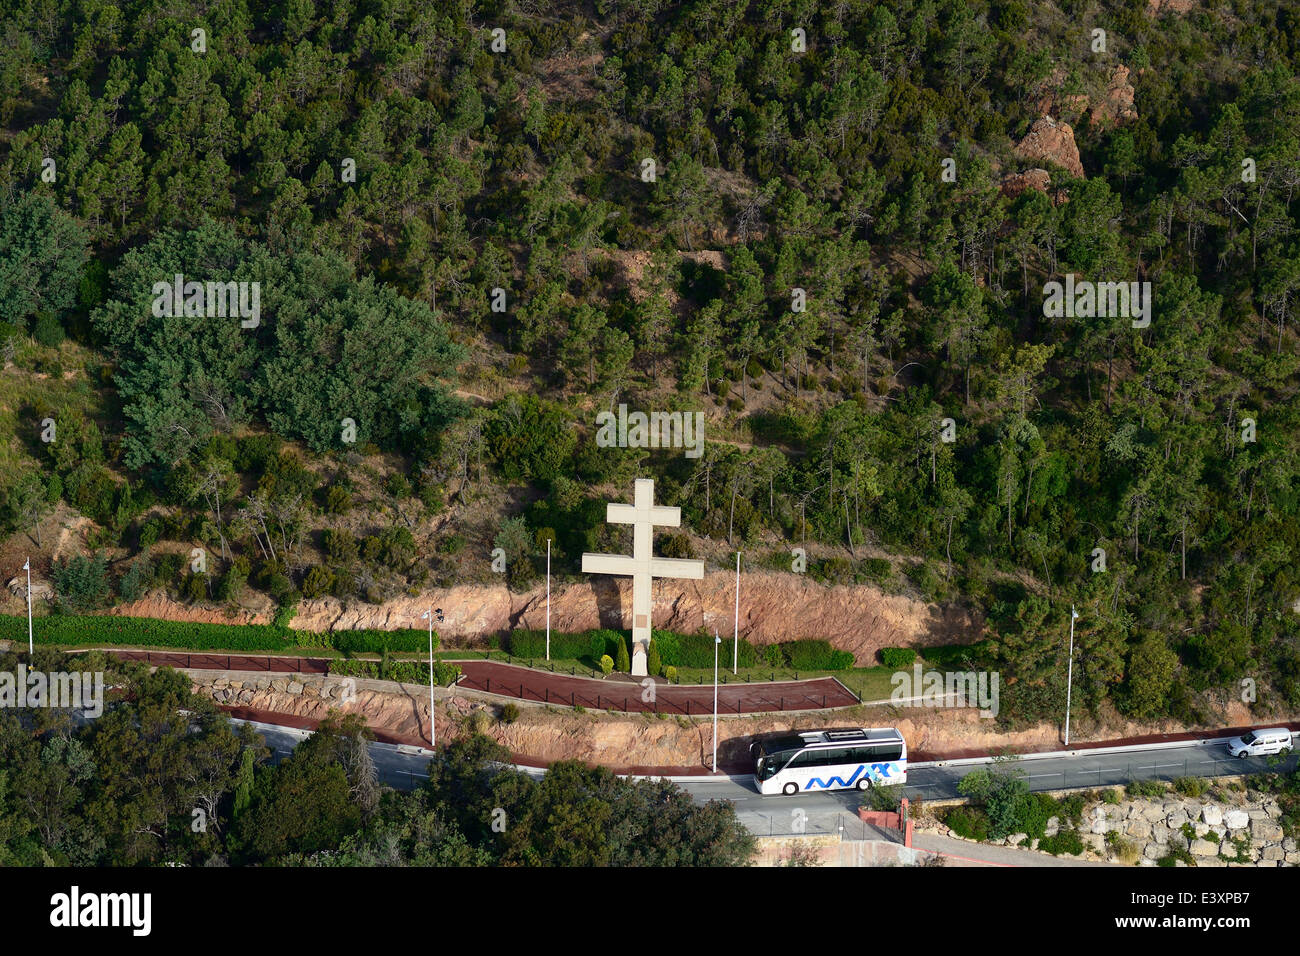 La croix de lorraine hi-res stock photography and images - Alamy